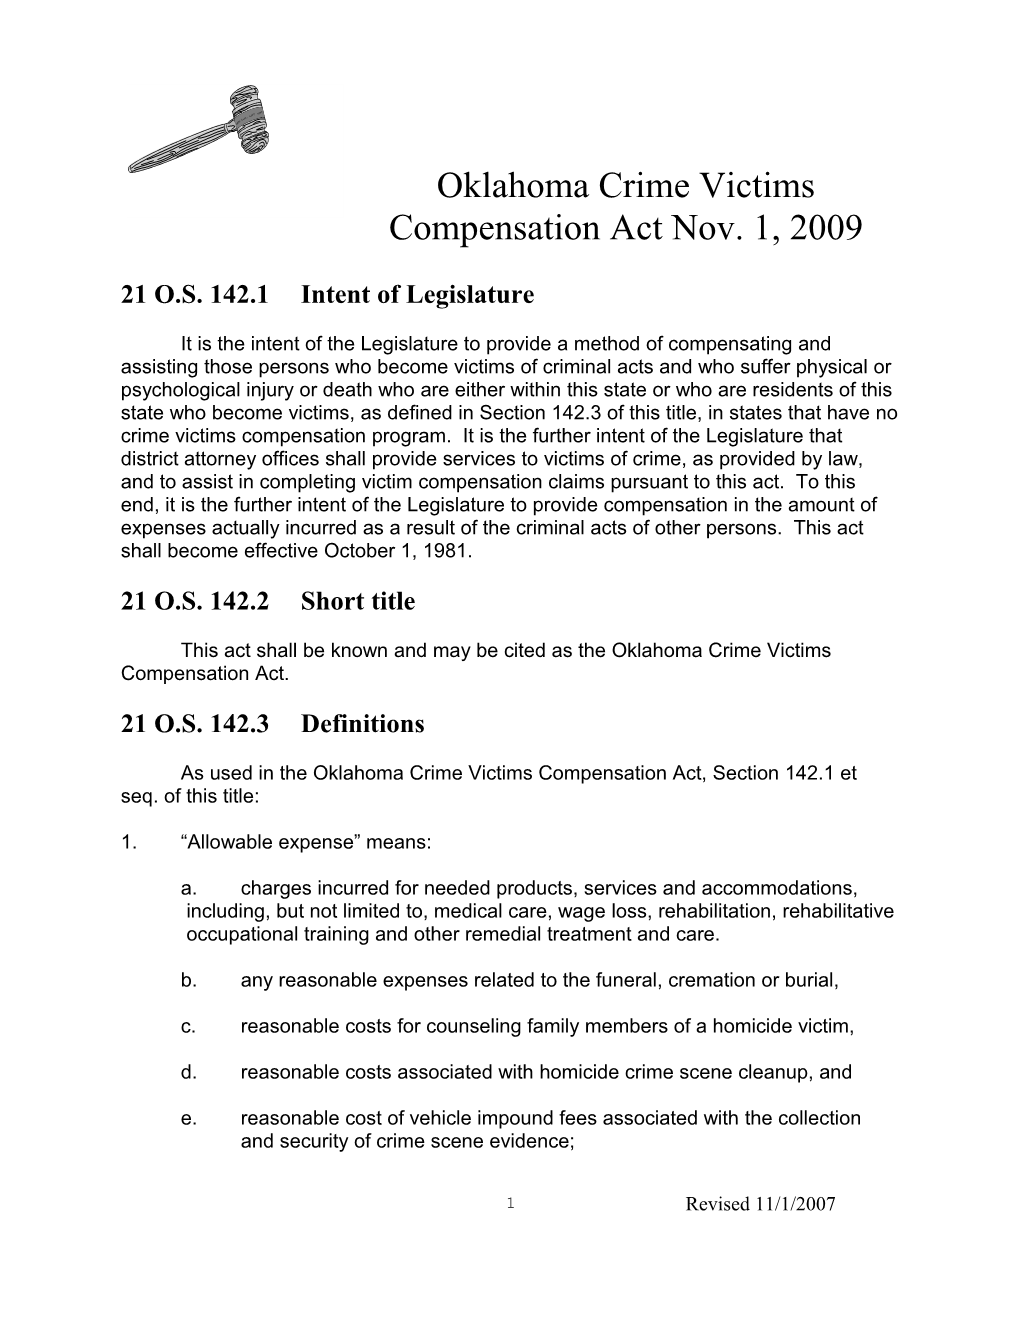 Oklahoma Crime Victims Compensation Actnov. 1, 2009